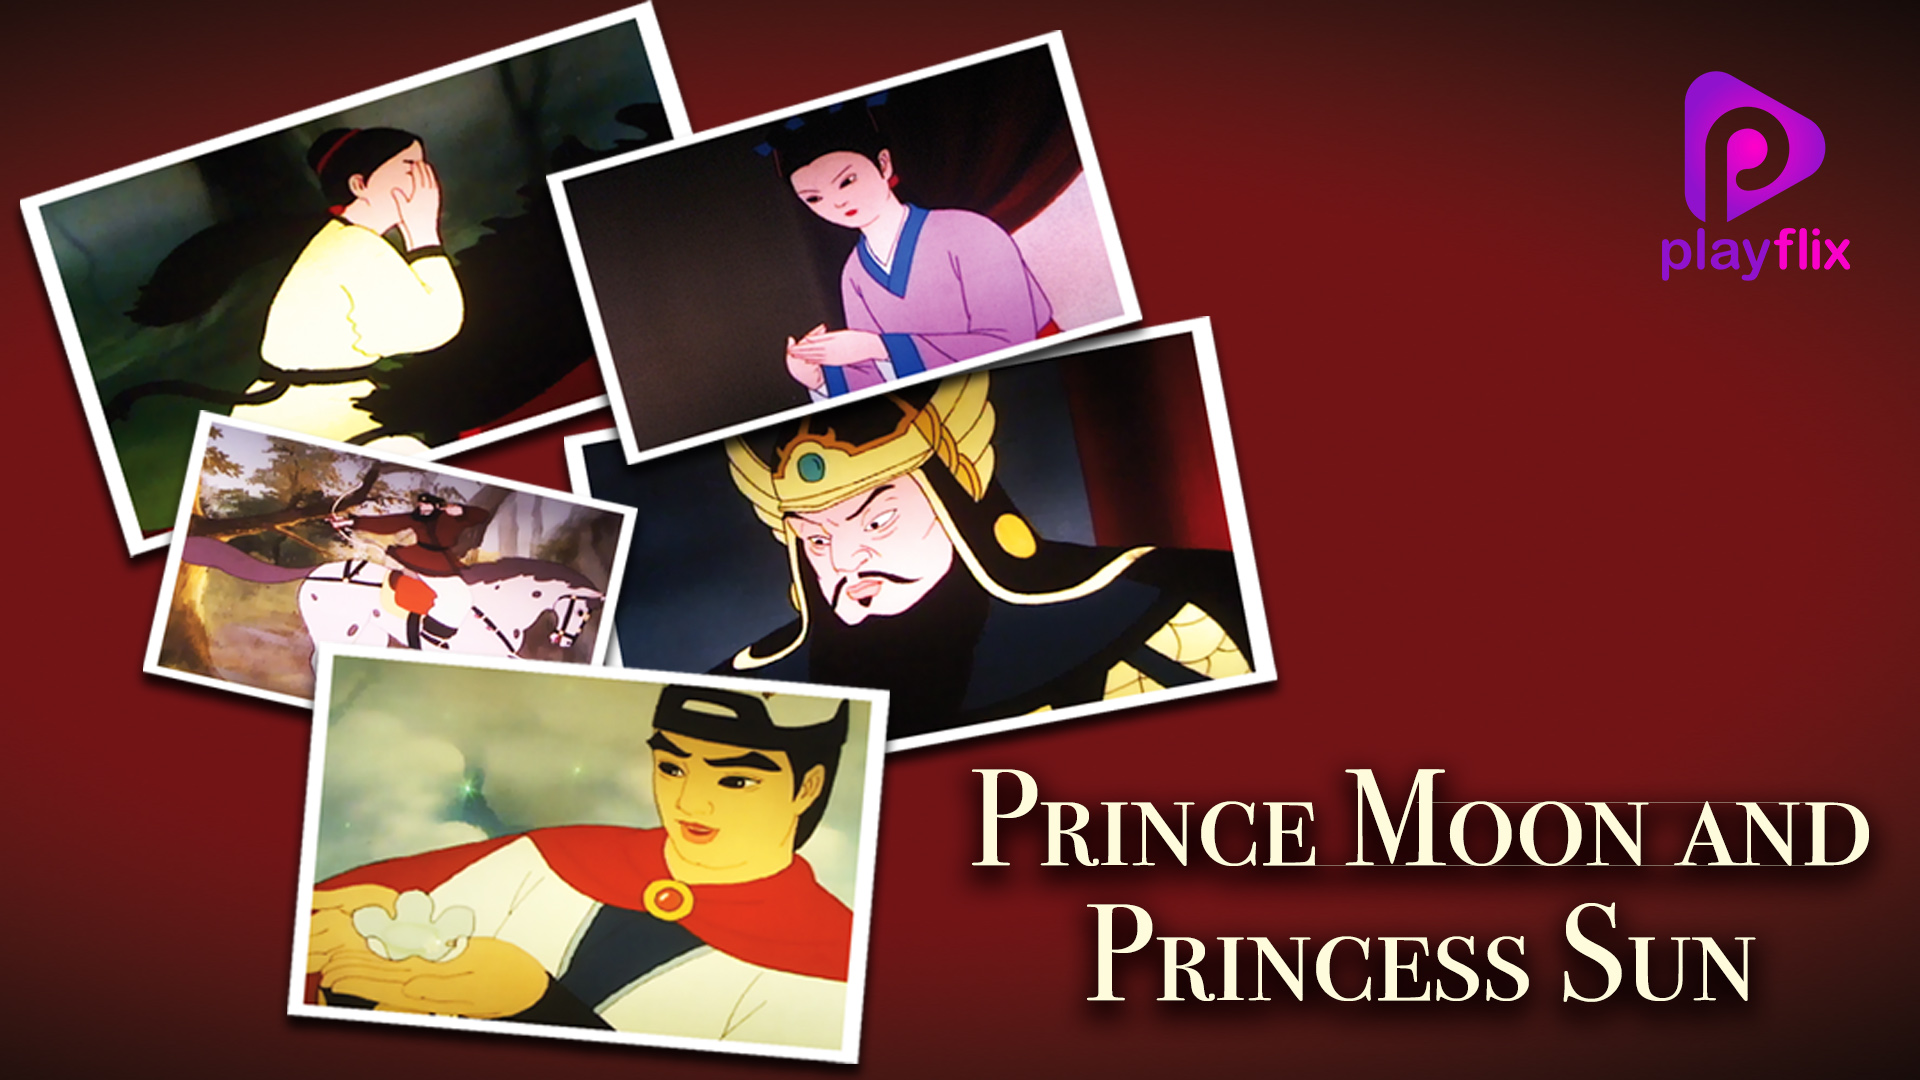 Prince Moon And The Princess Sun